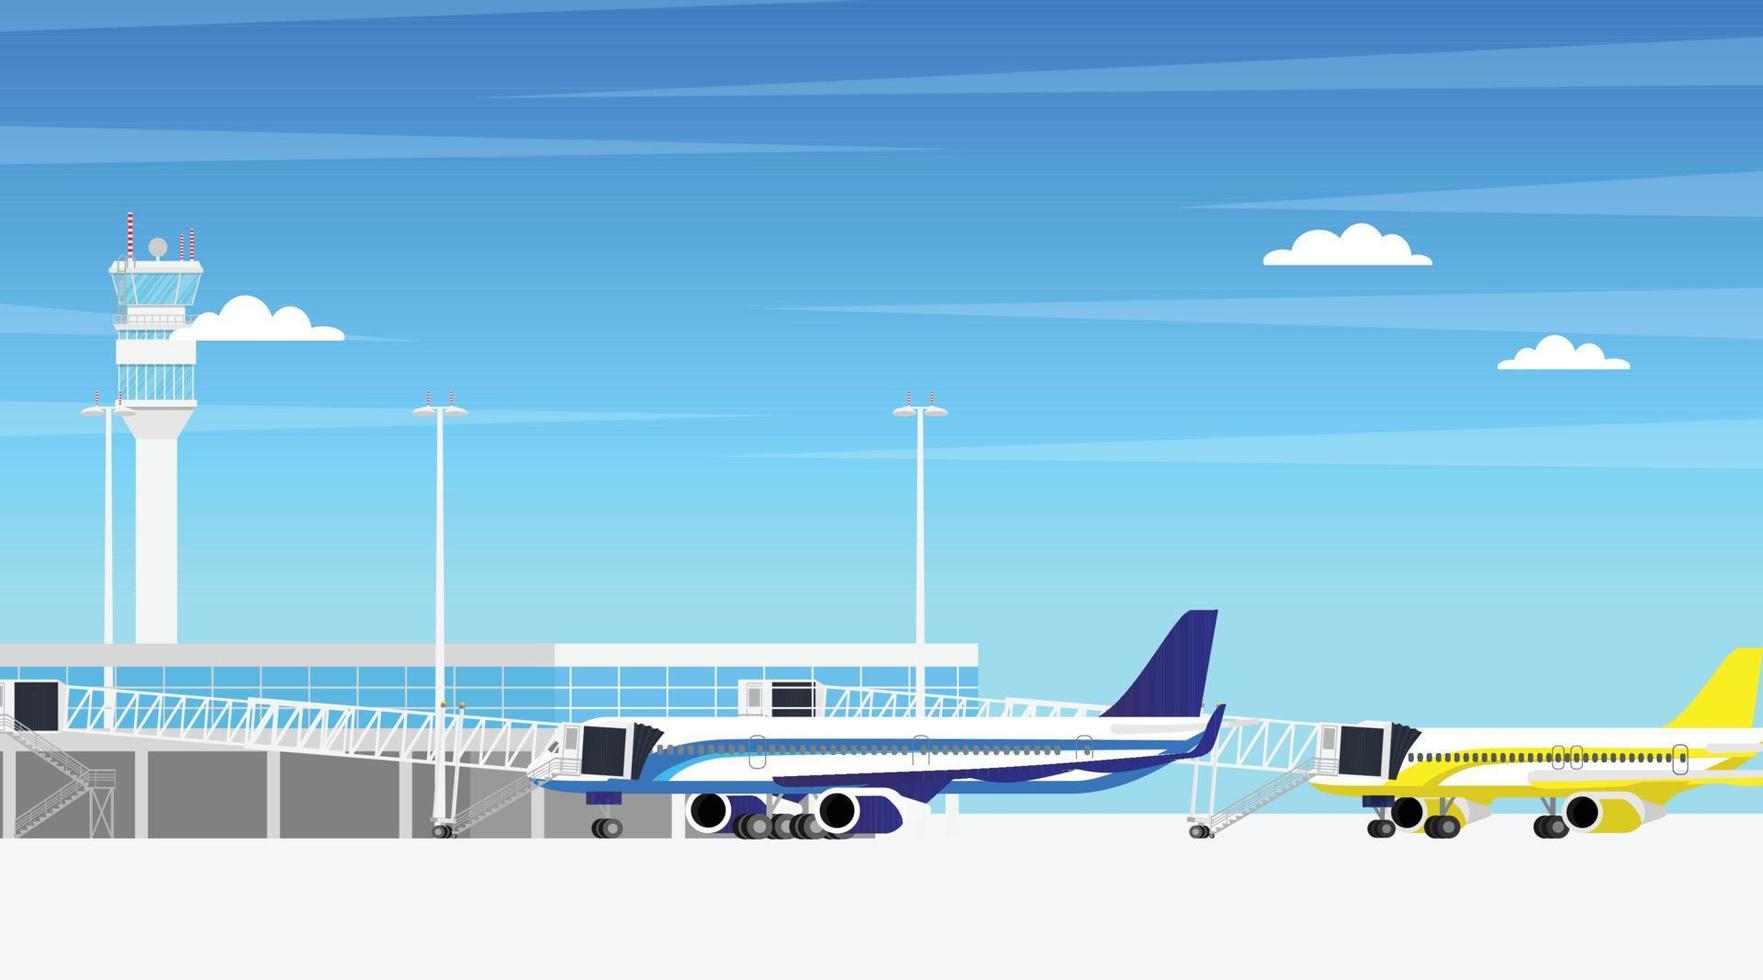 Terminalgebäude des Flughafenflugplatzes mit Flugzeugparkplätzen am Abfluggate und Flugbrücke, die mit der Flughafenterminalhalle in minimalem Design verbunden ist vektor